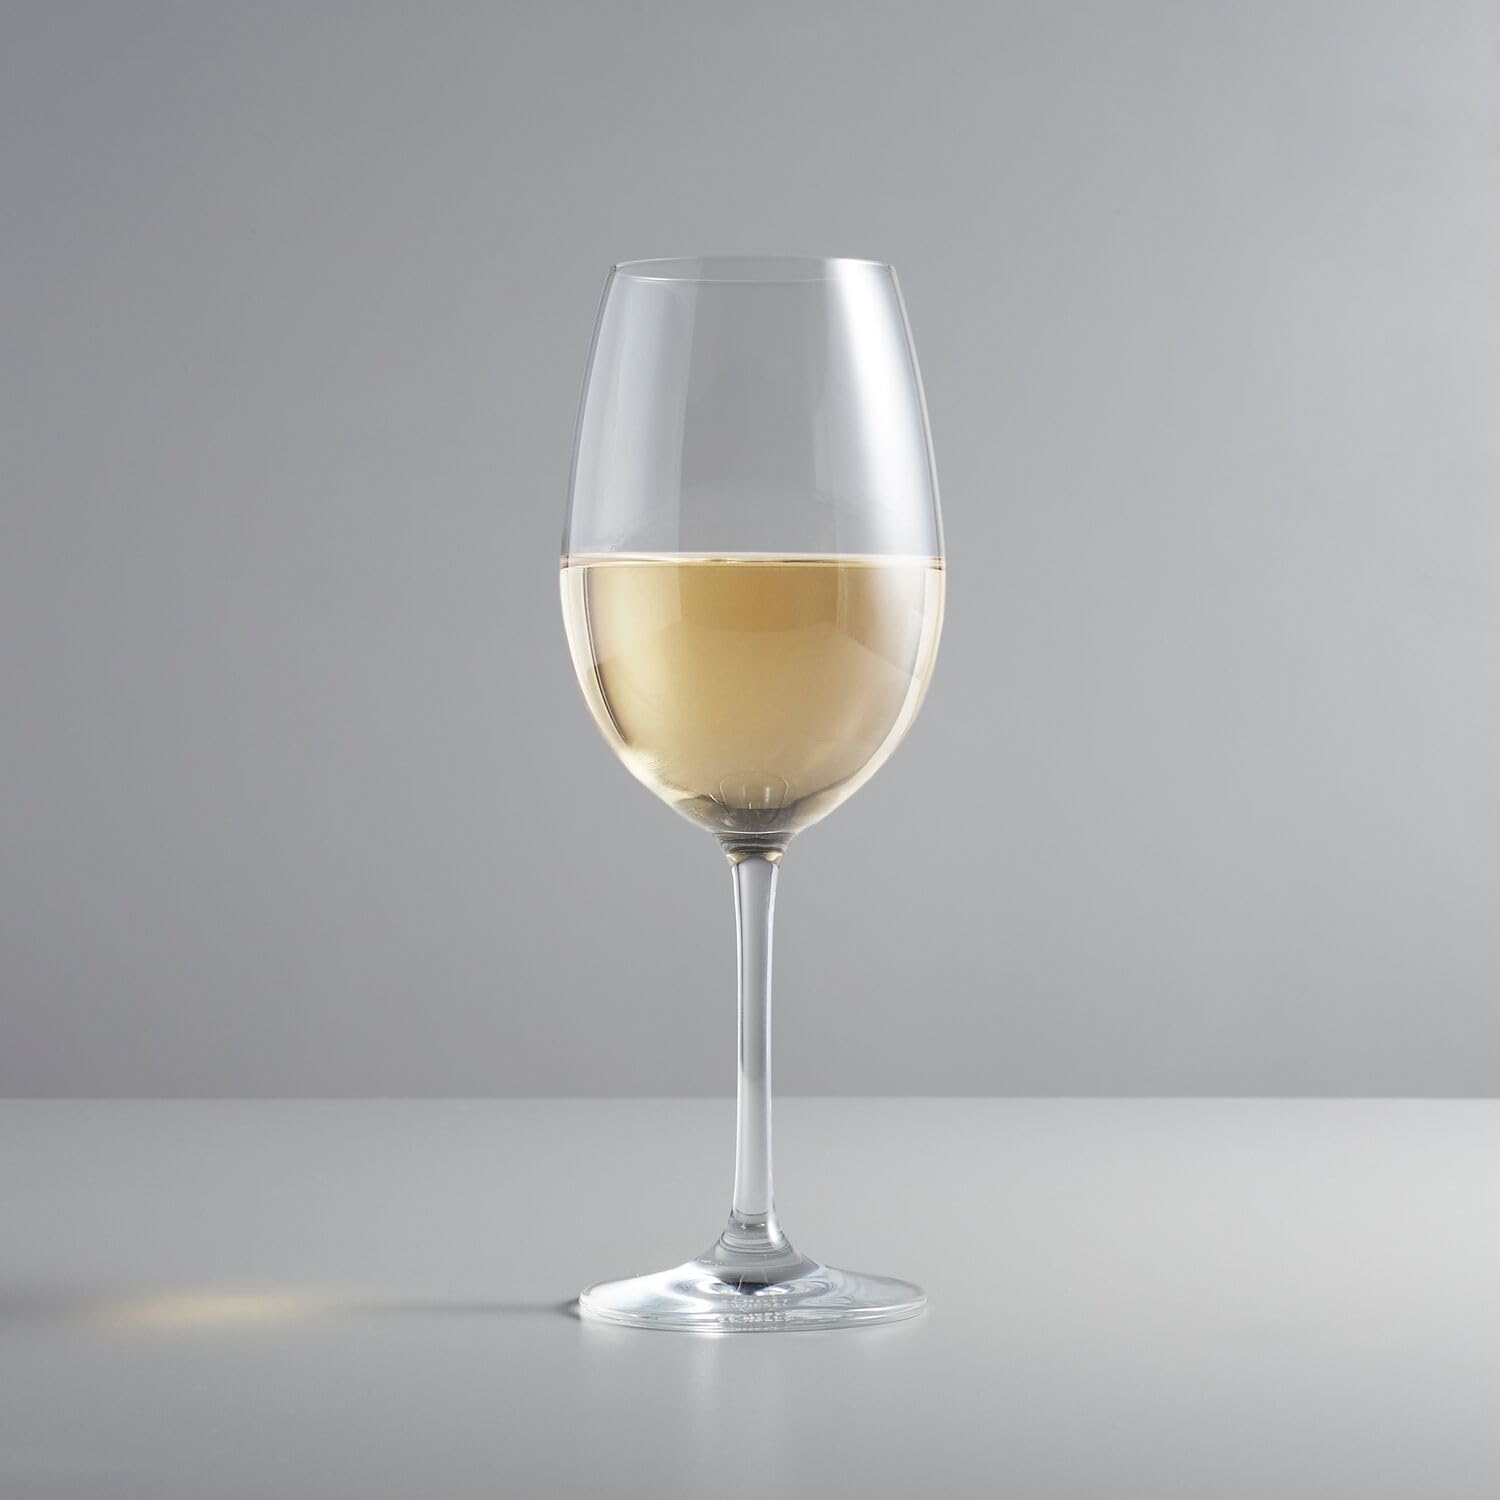 Sur La Table Chateau Soft White Wine Glass, Clear